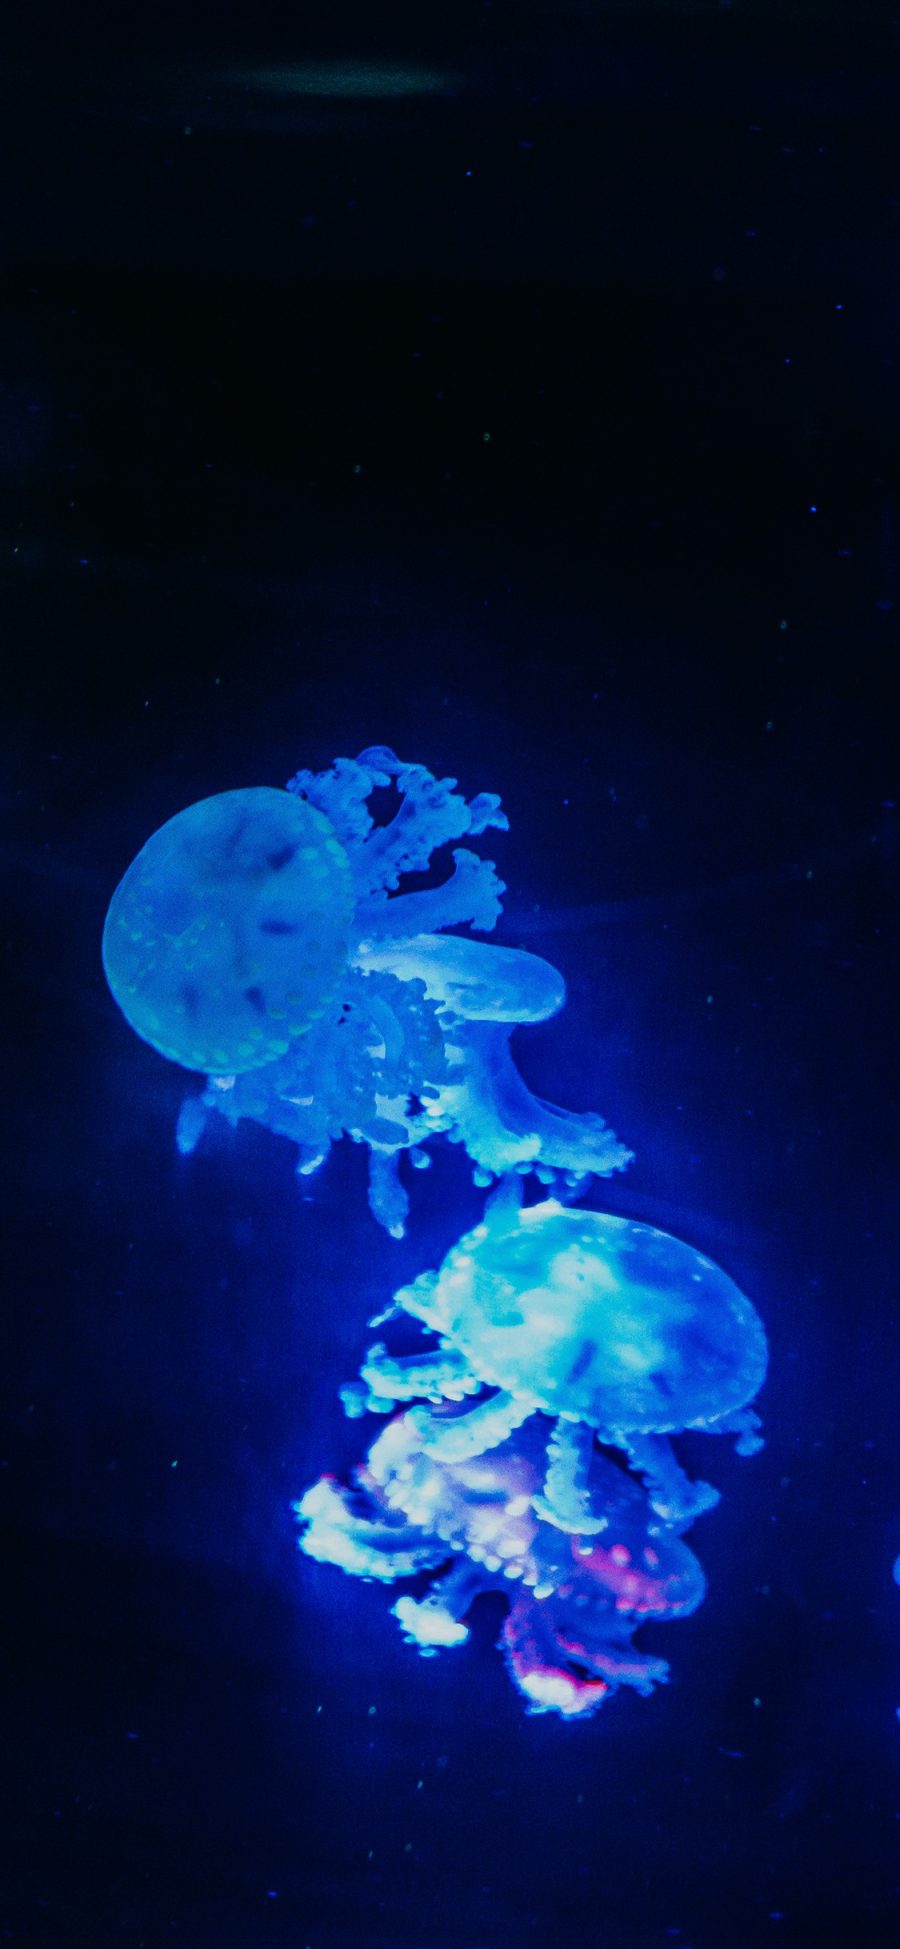 [2436×1125]水母 浮游 荧光 海洋生物 苹果手机壁纸图片